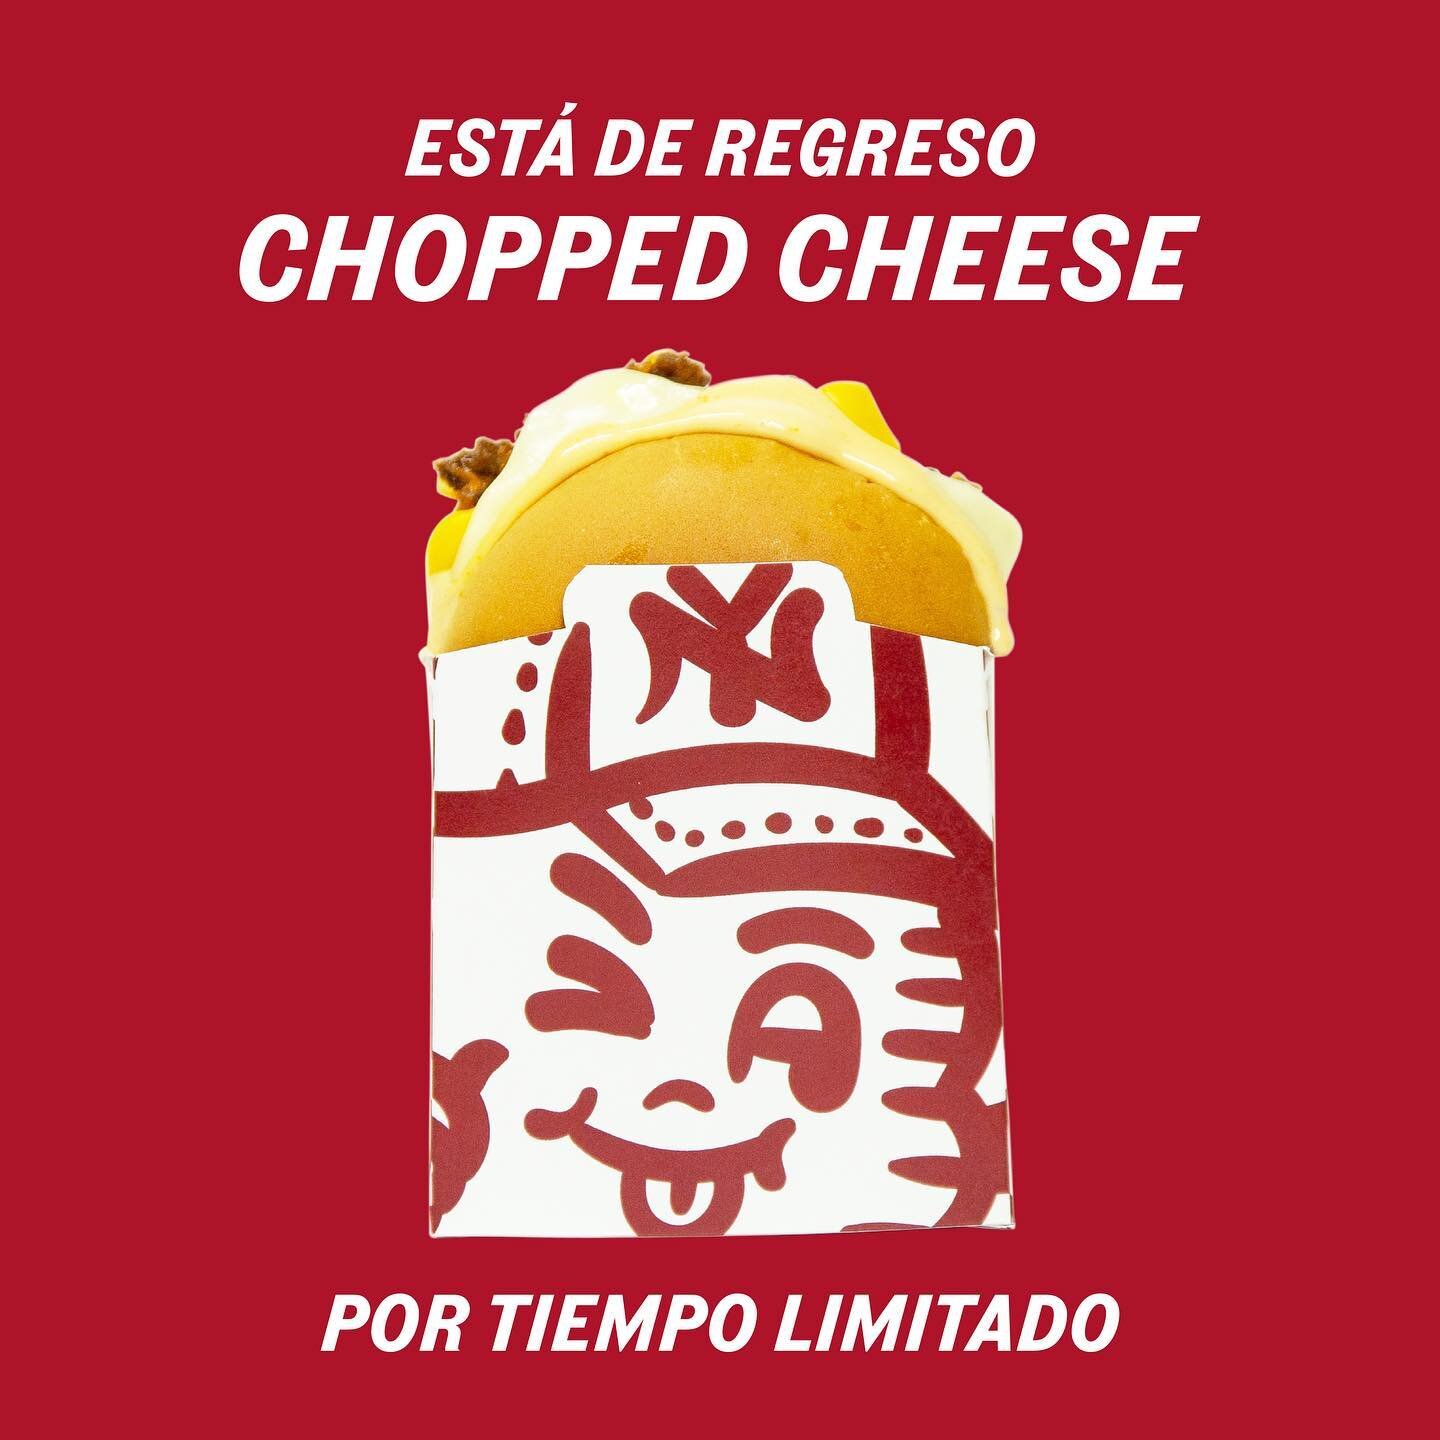 🍔 &iexcl;Hoy celebramos el esperado regreso de nuestro Chopped Cheese Slider! 🍅🧀✨ Elaborado en colaboraci&oacute;n con @heinz_mex , esta obra maestra de sabores est&aacute; de vuelta solo por tiempo limitado. &iexcl;Disfruta de los ricos sabores y